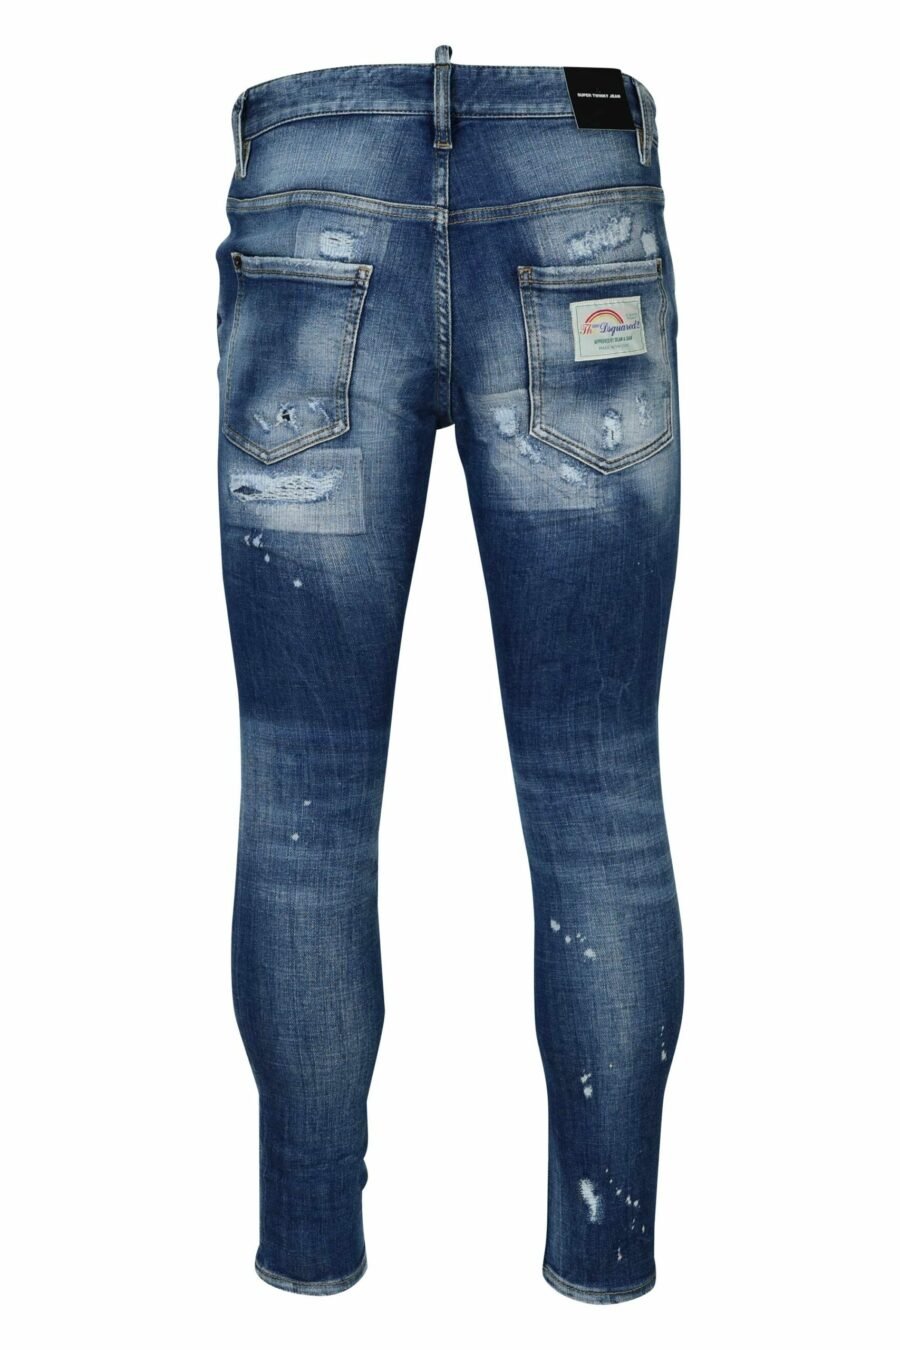 Blaue "super twinky jean" Jeans mit Rissen - 8054148339029 2 skaliert